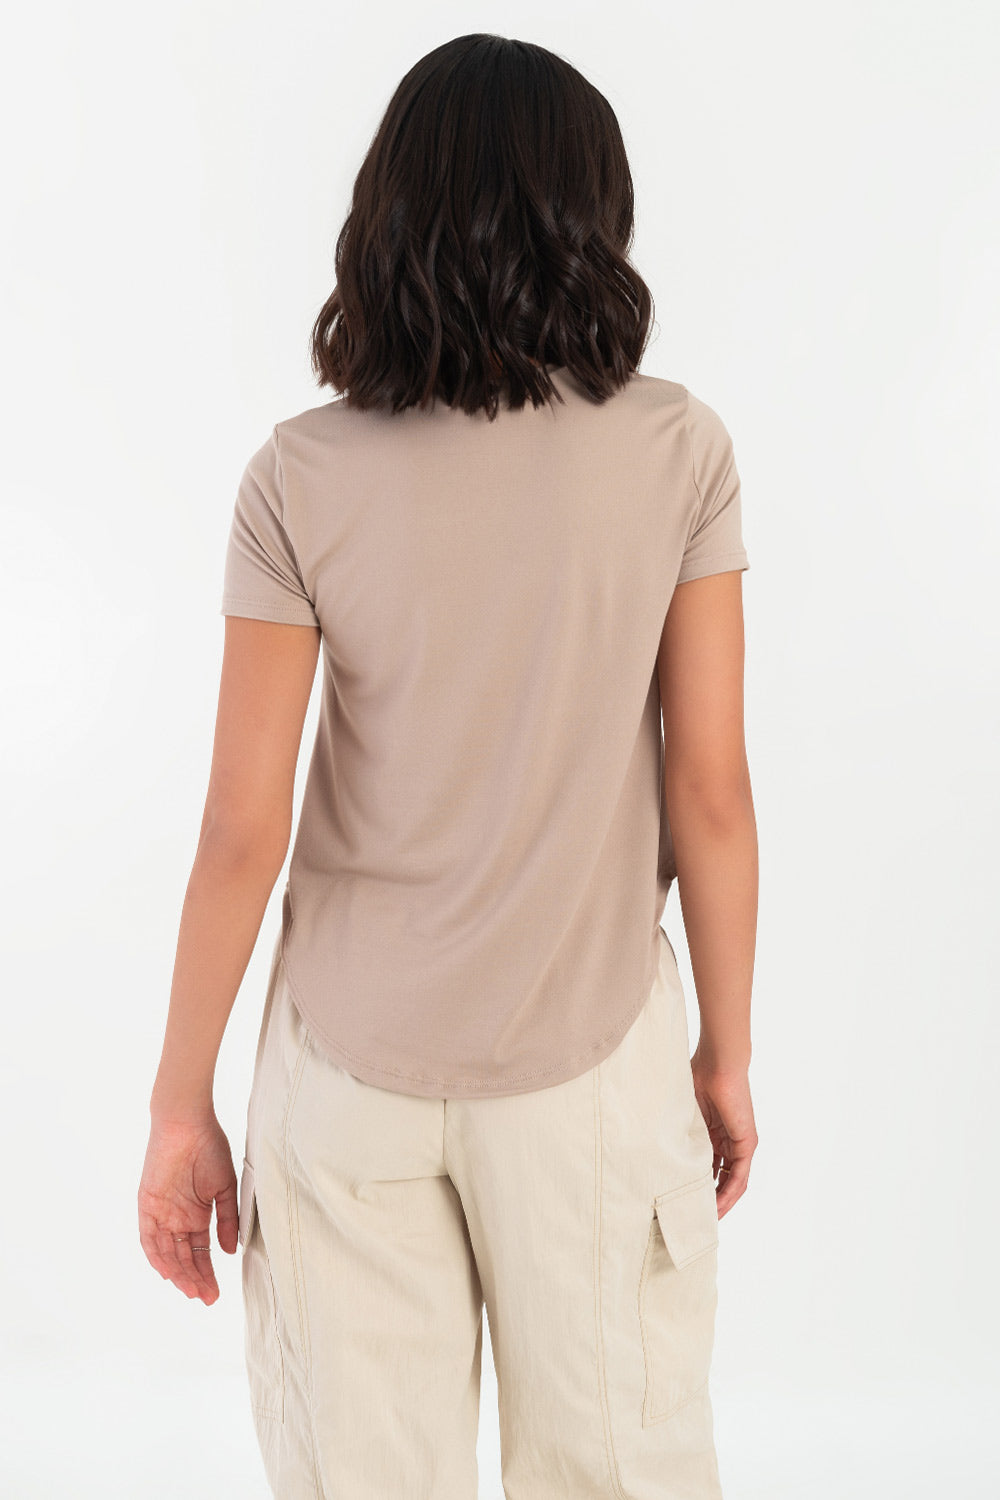 Camiseta silueta fluida, cuello redondo y manga corta. Detalle de bajo curveado.